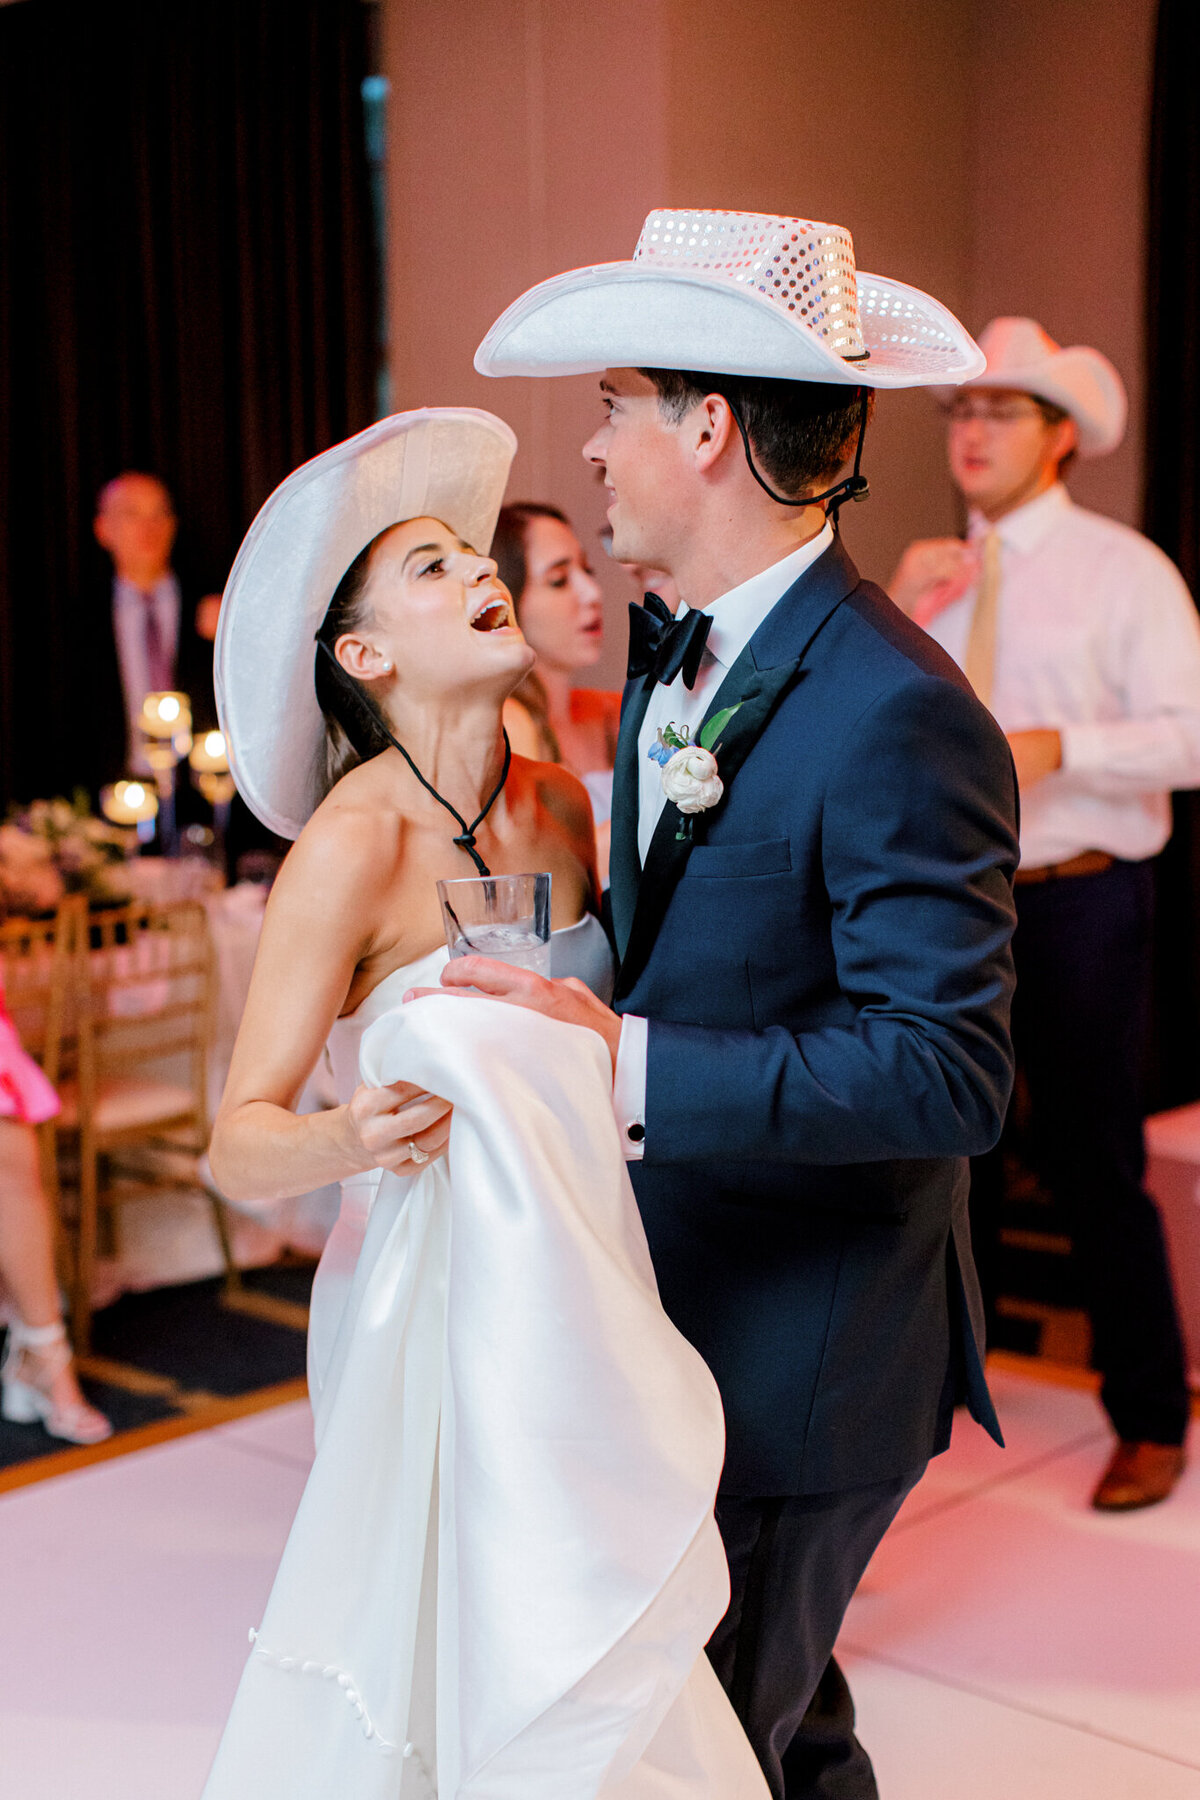 Annie & Logan's Wedding | Dallas Wedding Photographer | Sami Kathryn Photography-232